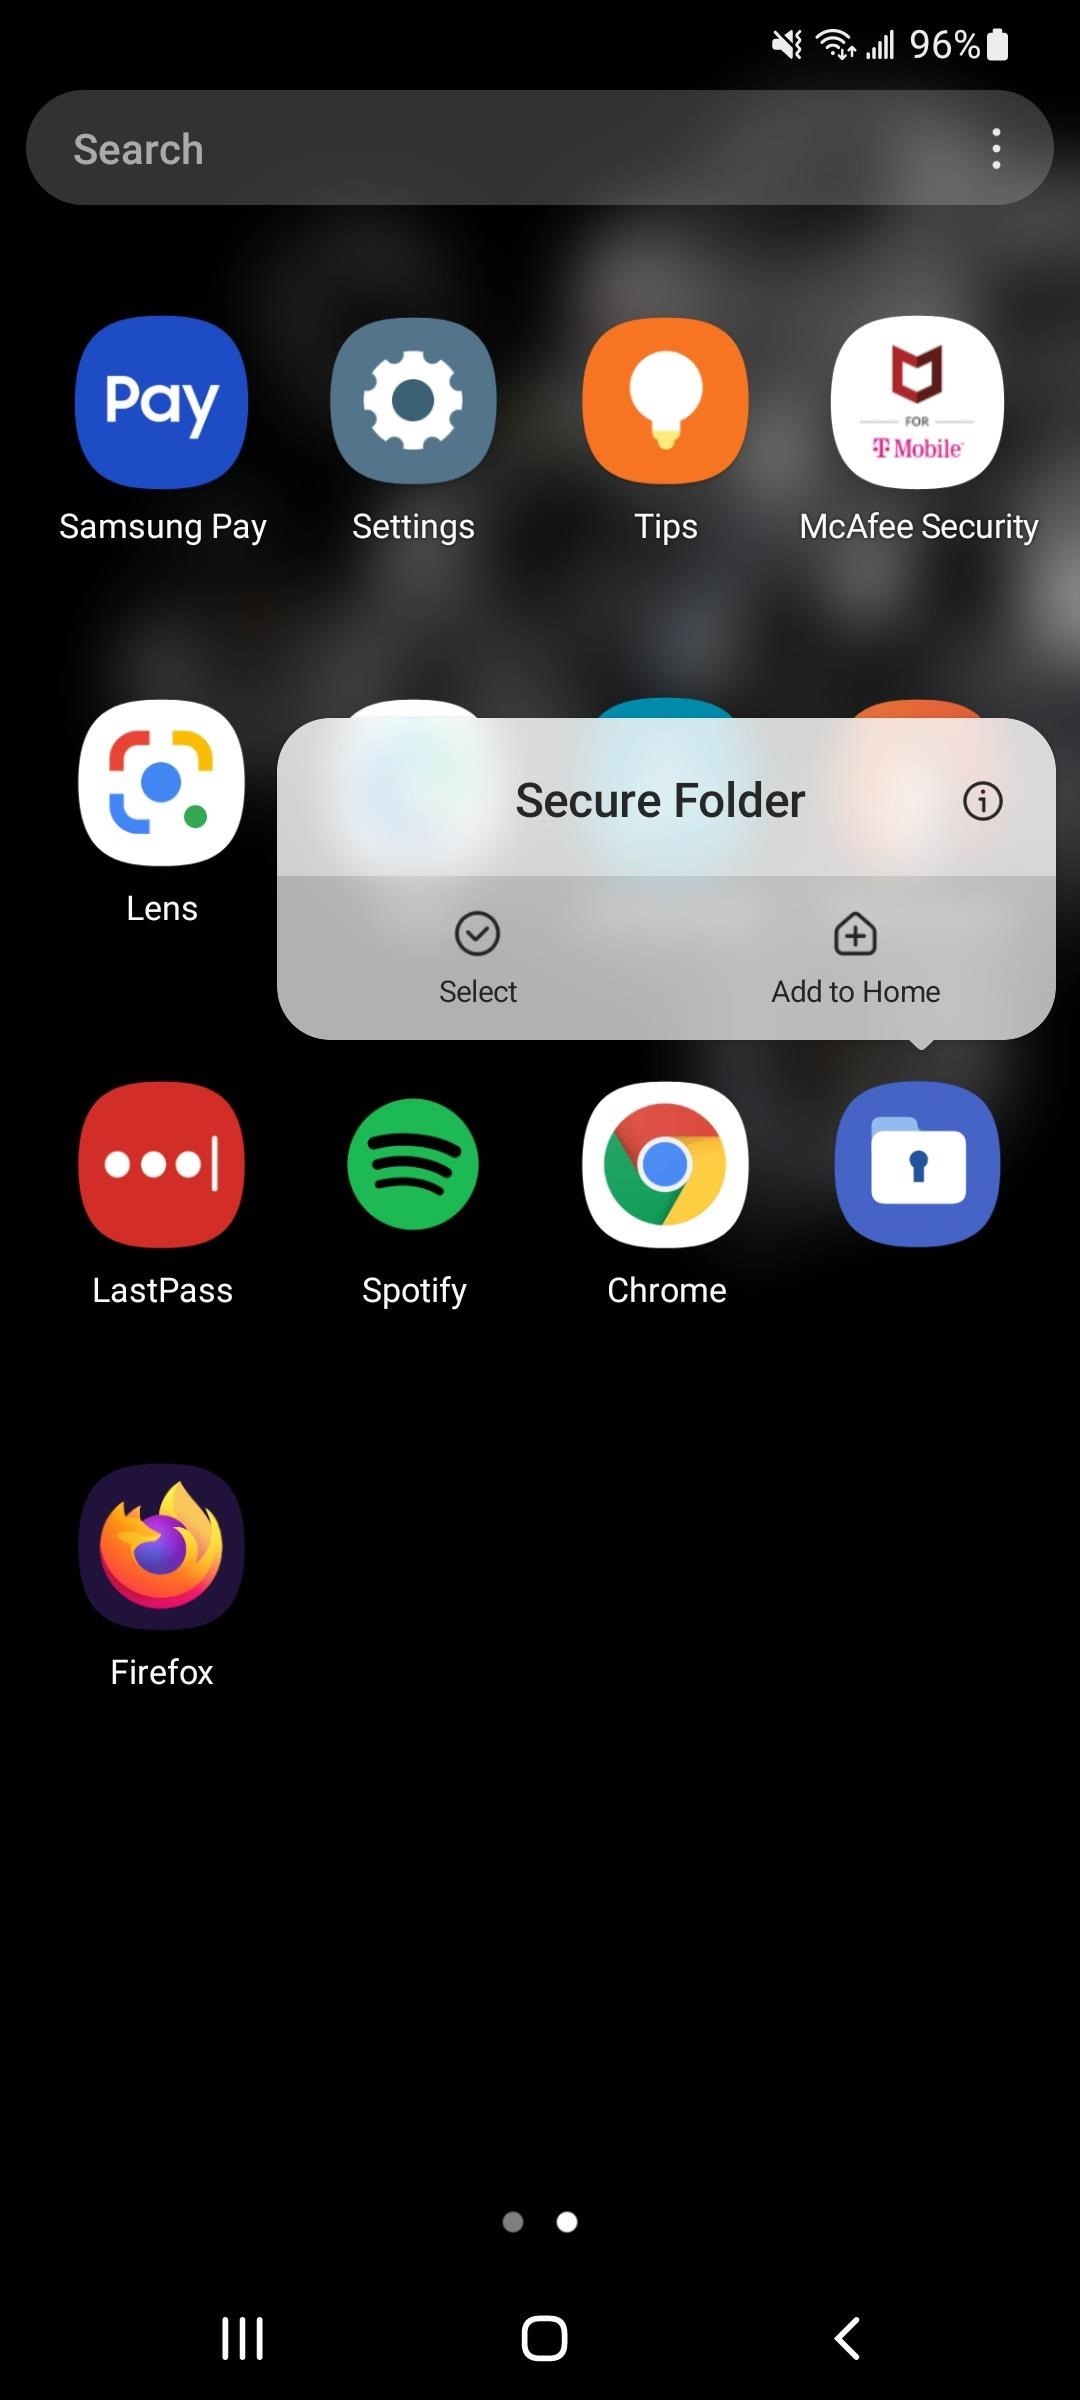 Activez Samsung Galaxy Vault pour protéger vos applications, fichiers et histoires des regards indiscrets et des pirates